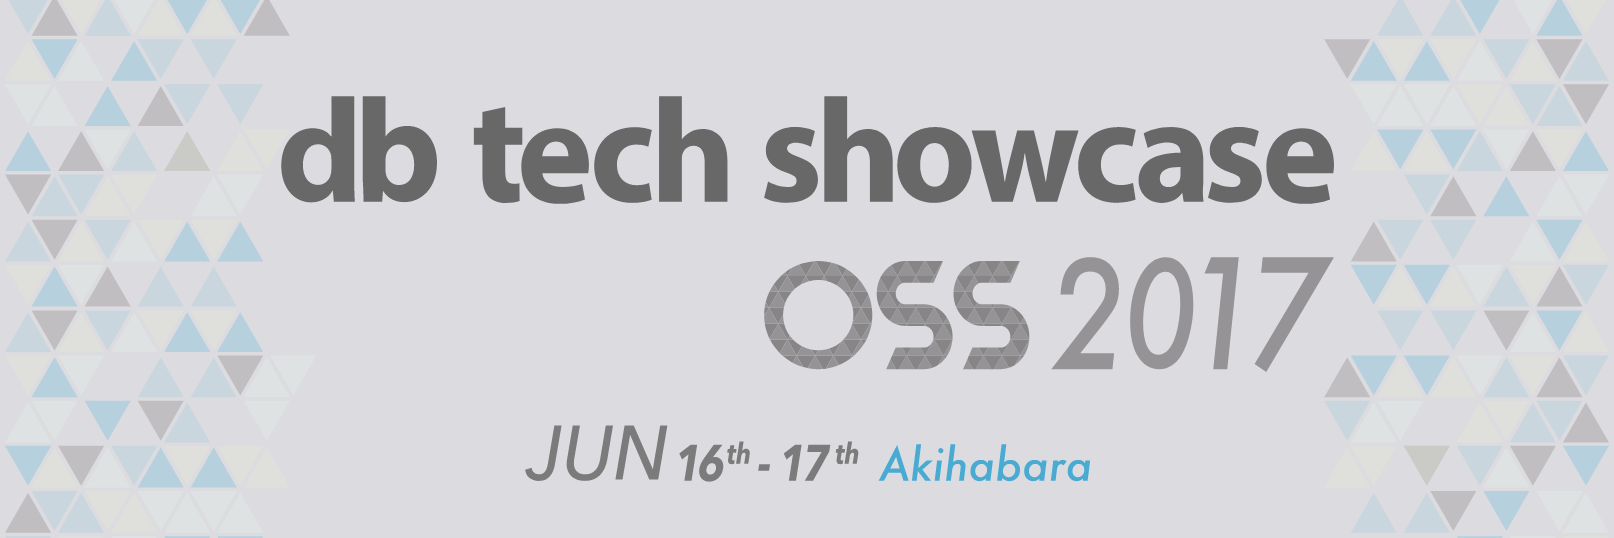 db tech showcase OSS 2017